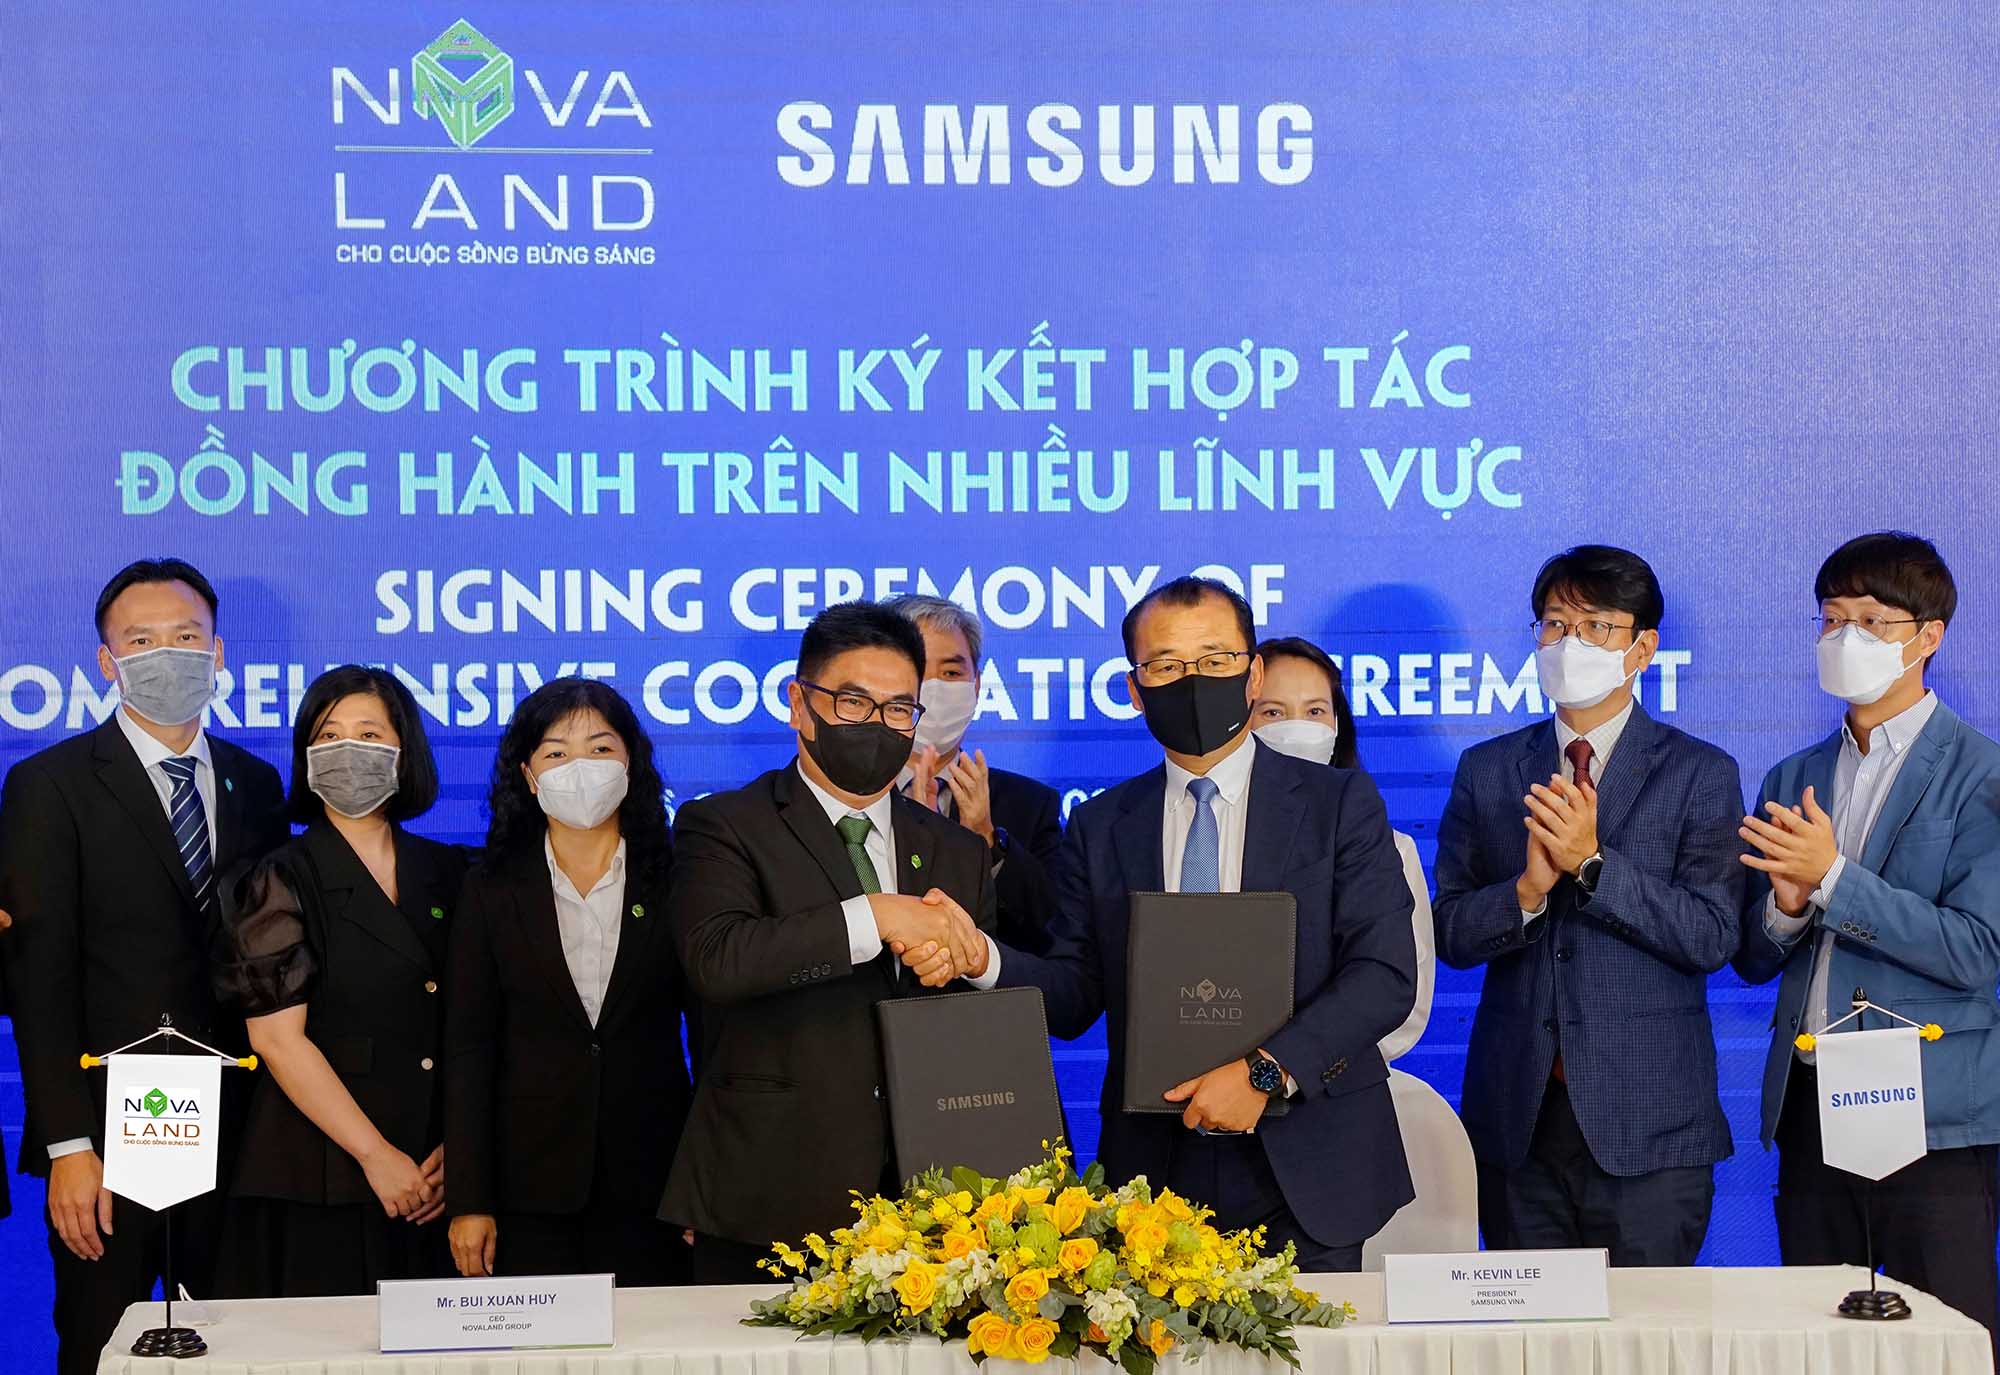 Novaland và Samsung ký kết hợp tác, đồng hành lâu dài trên nhiều lĩnh vực